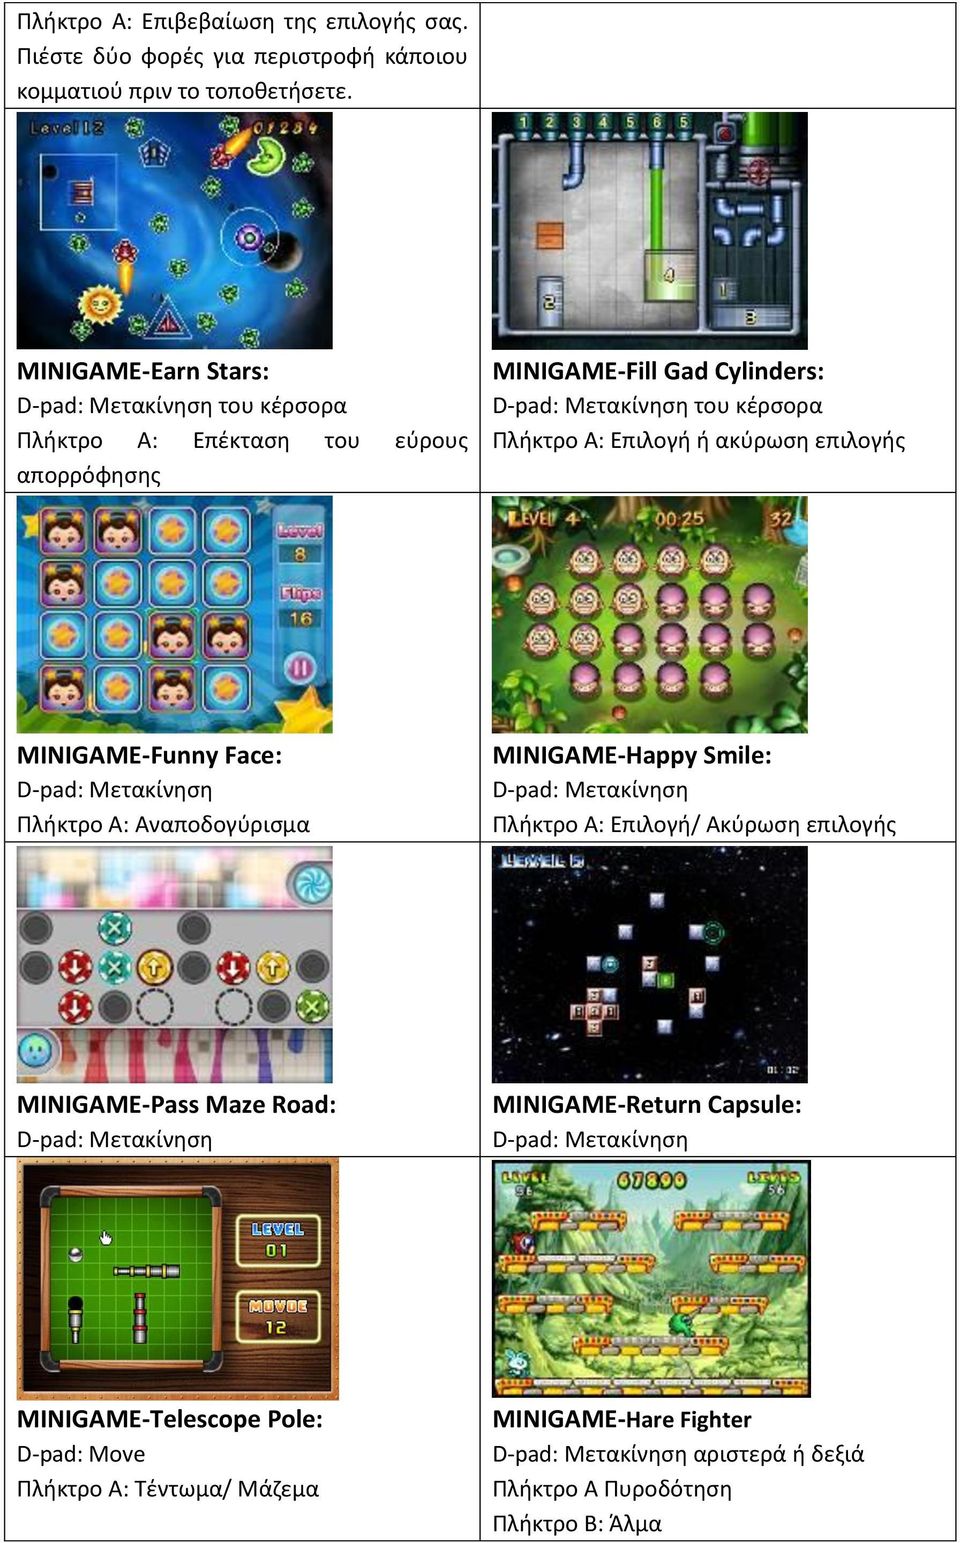 ακύρωση επιλογής MINIGAME-Funny Face: Πλήκτρο Α: Αναποδογύρισμα MINIGAME-Happy Smile: Πλήκτρο Α: Επιλογή/ Ακύρωση επιλογής MINIGAME-Pass